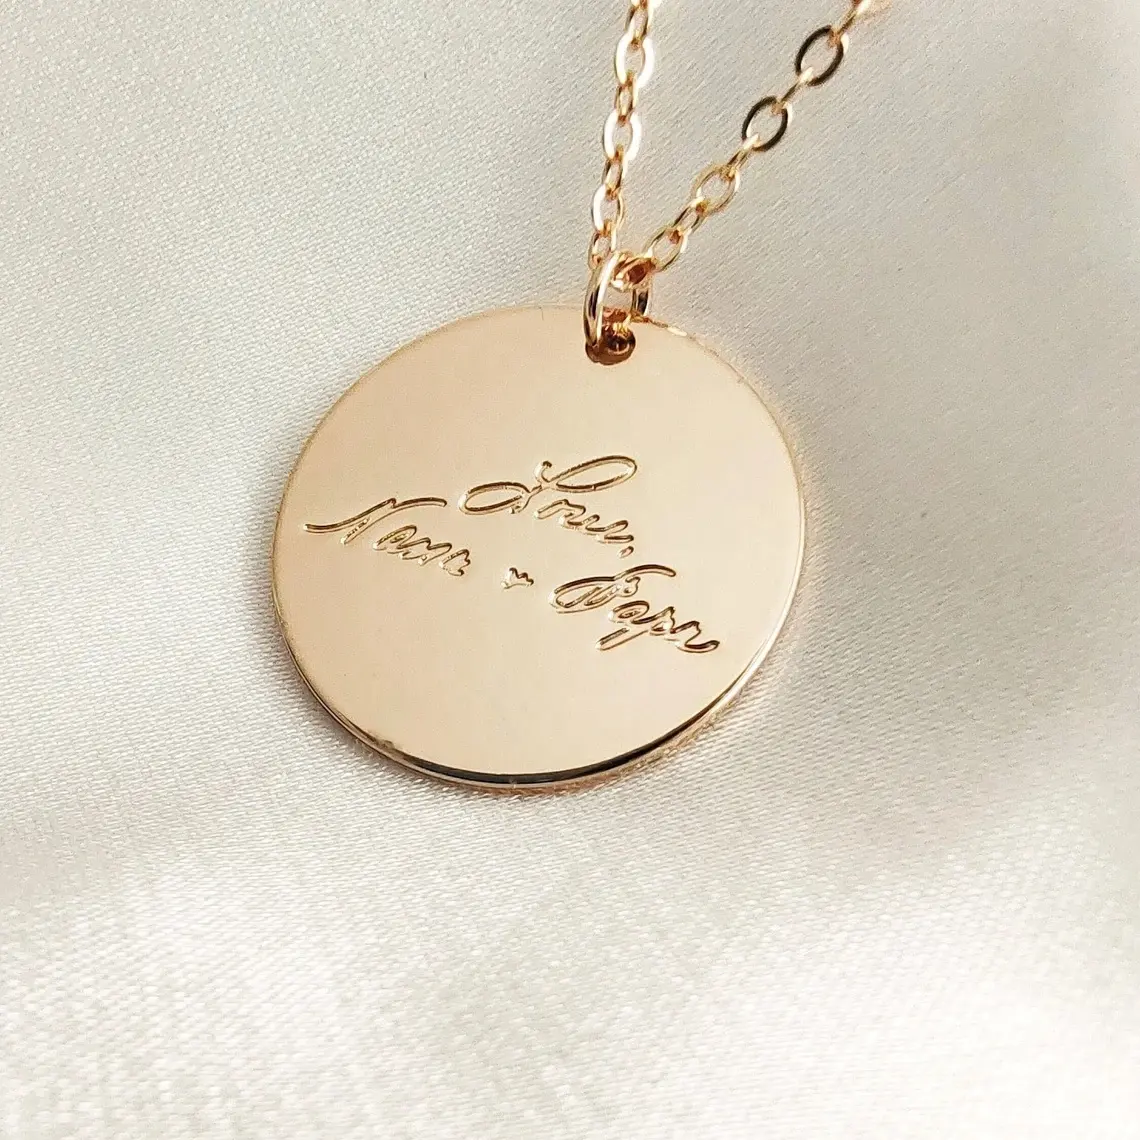 Handgemachte Gold gravierte runde Anhänger Halskette Name Geschenk personal isiert für ihre Frauen Kalligraphie hand geschriebene Zitat angepasst